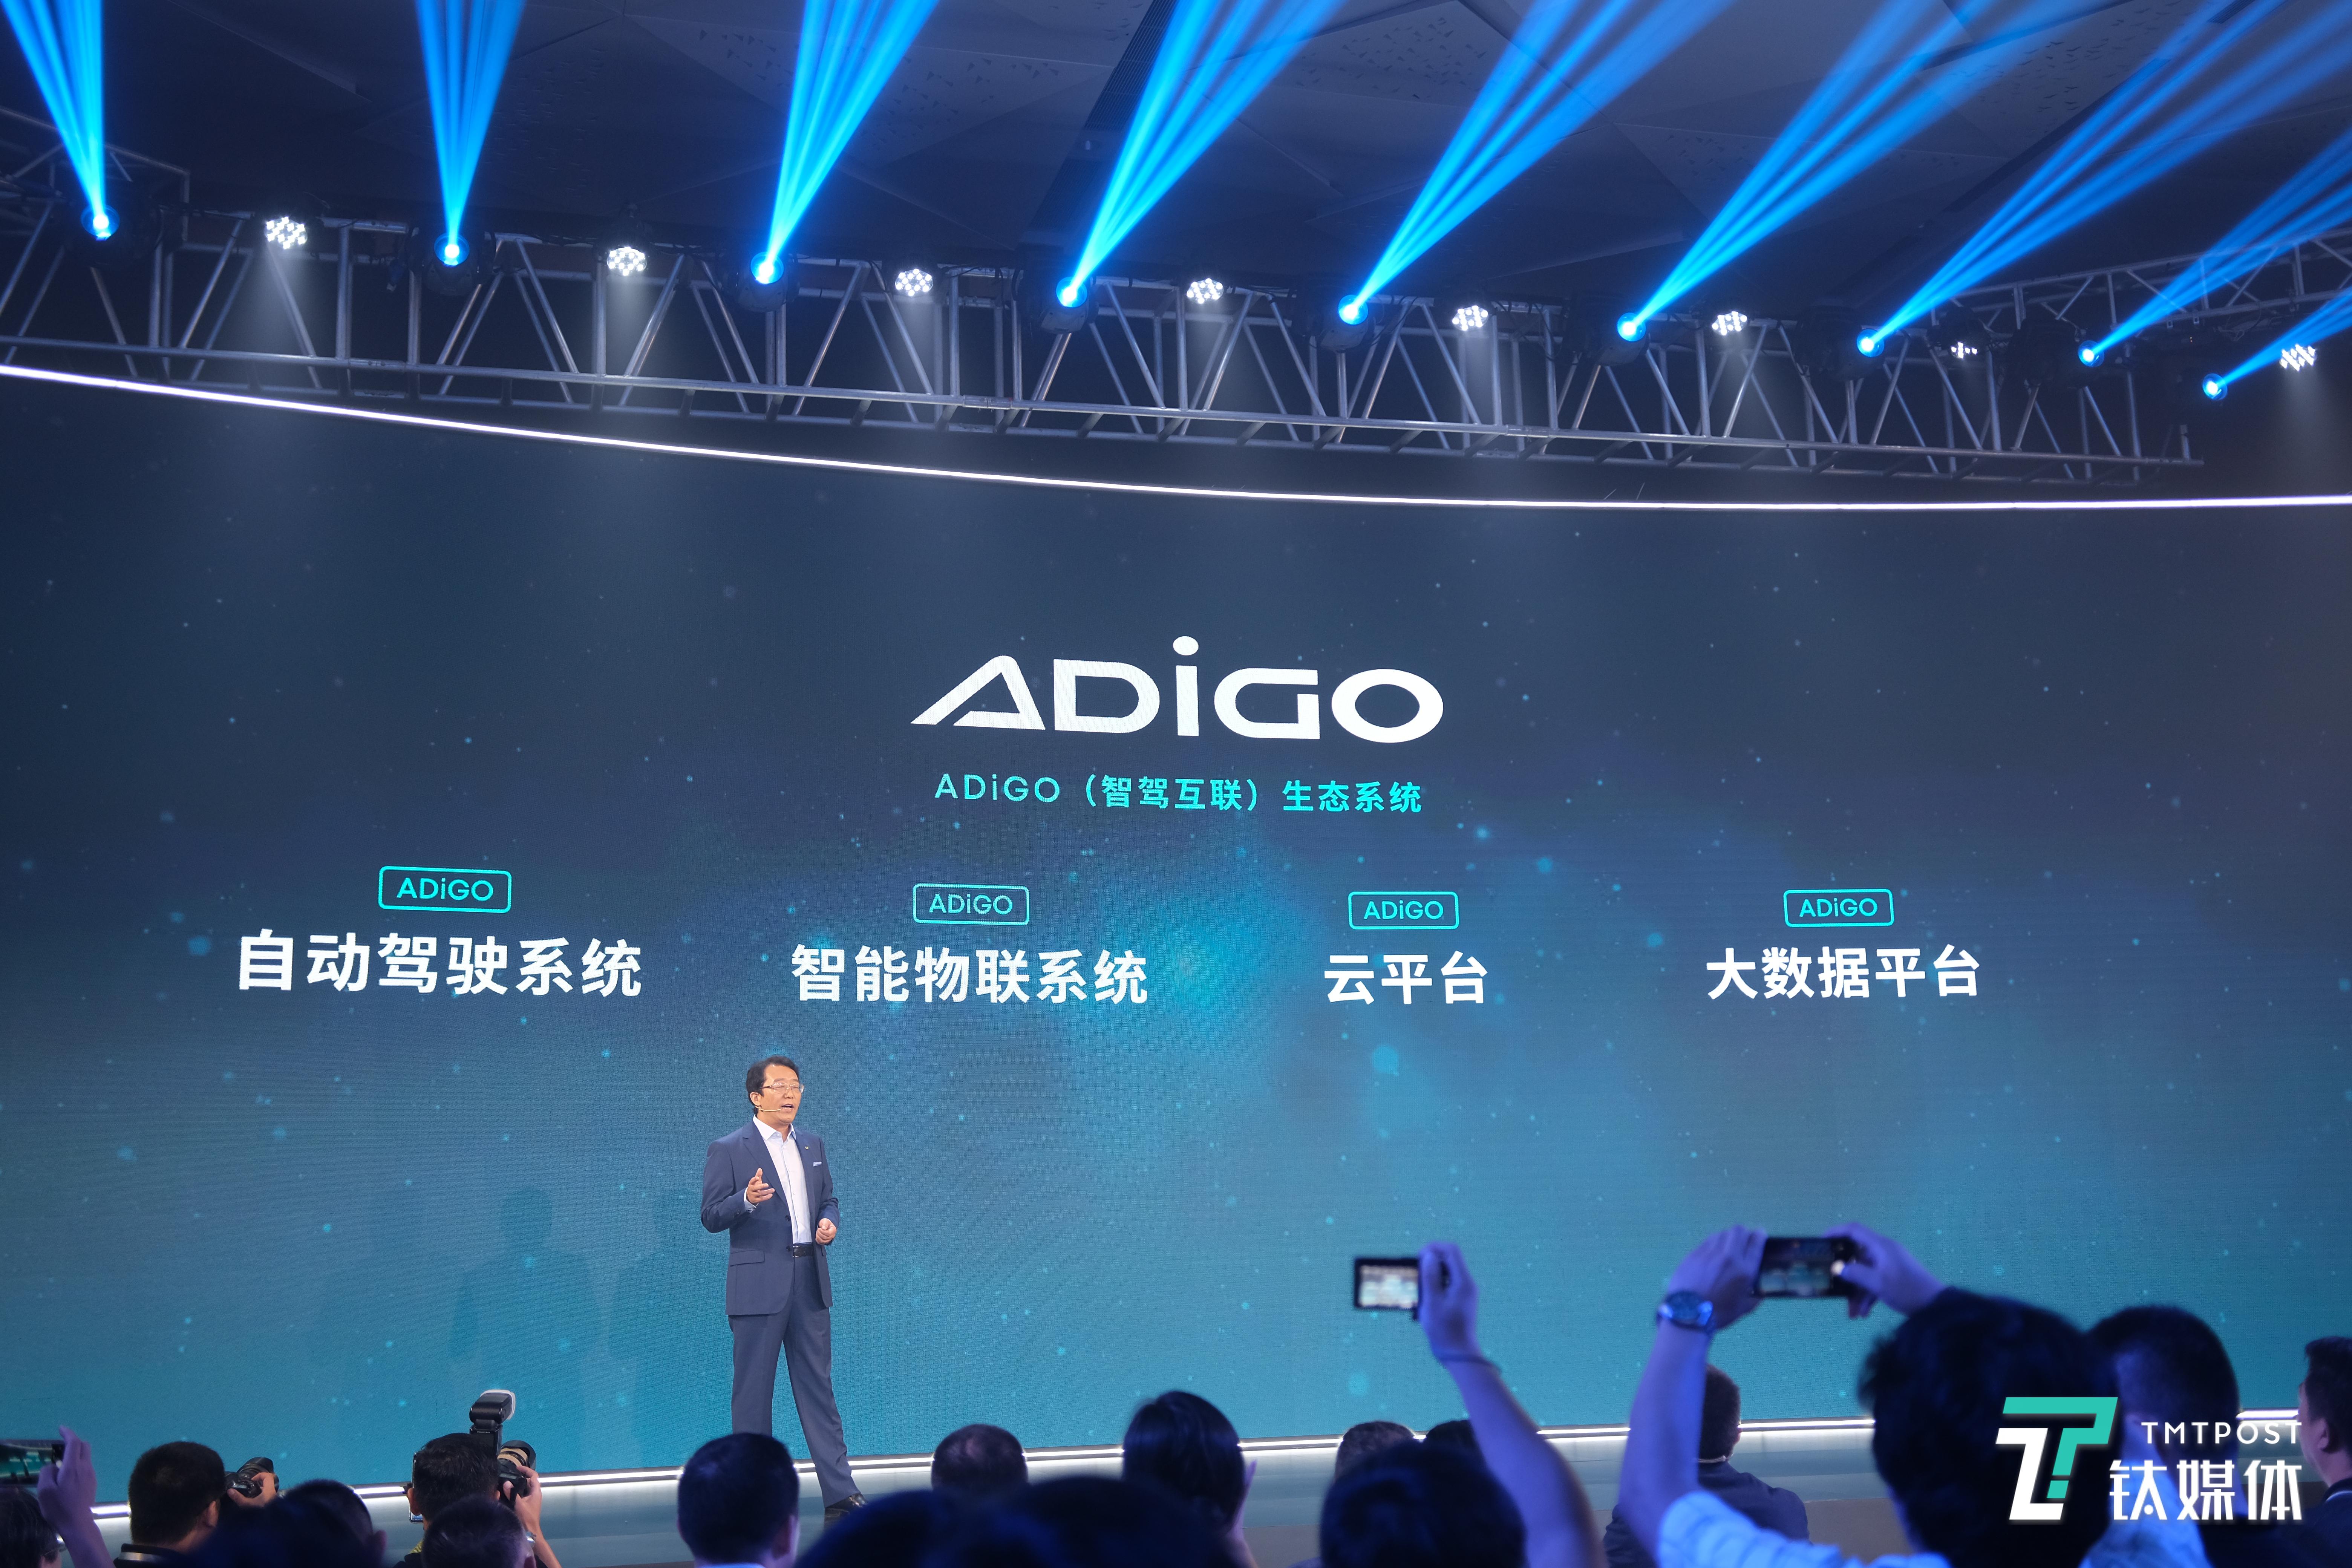 广汽集团发布ADiGO智驾互联生态系统 | 一线车讯